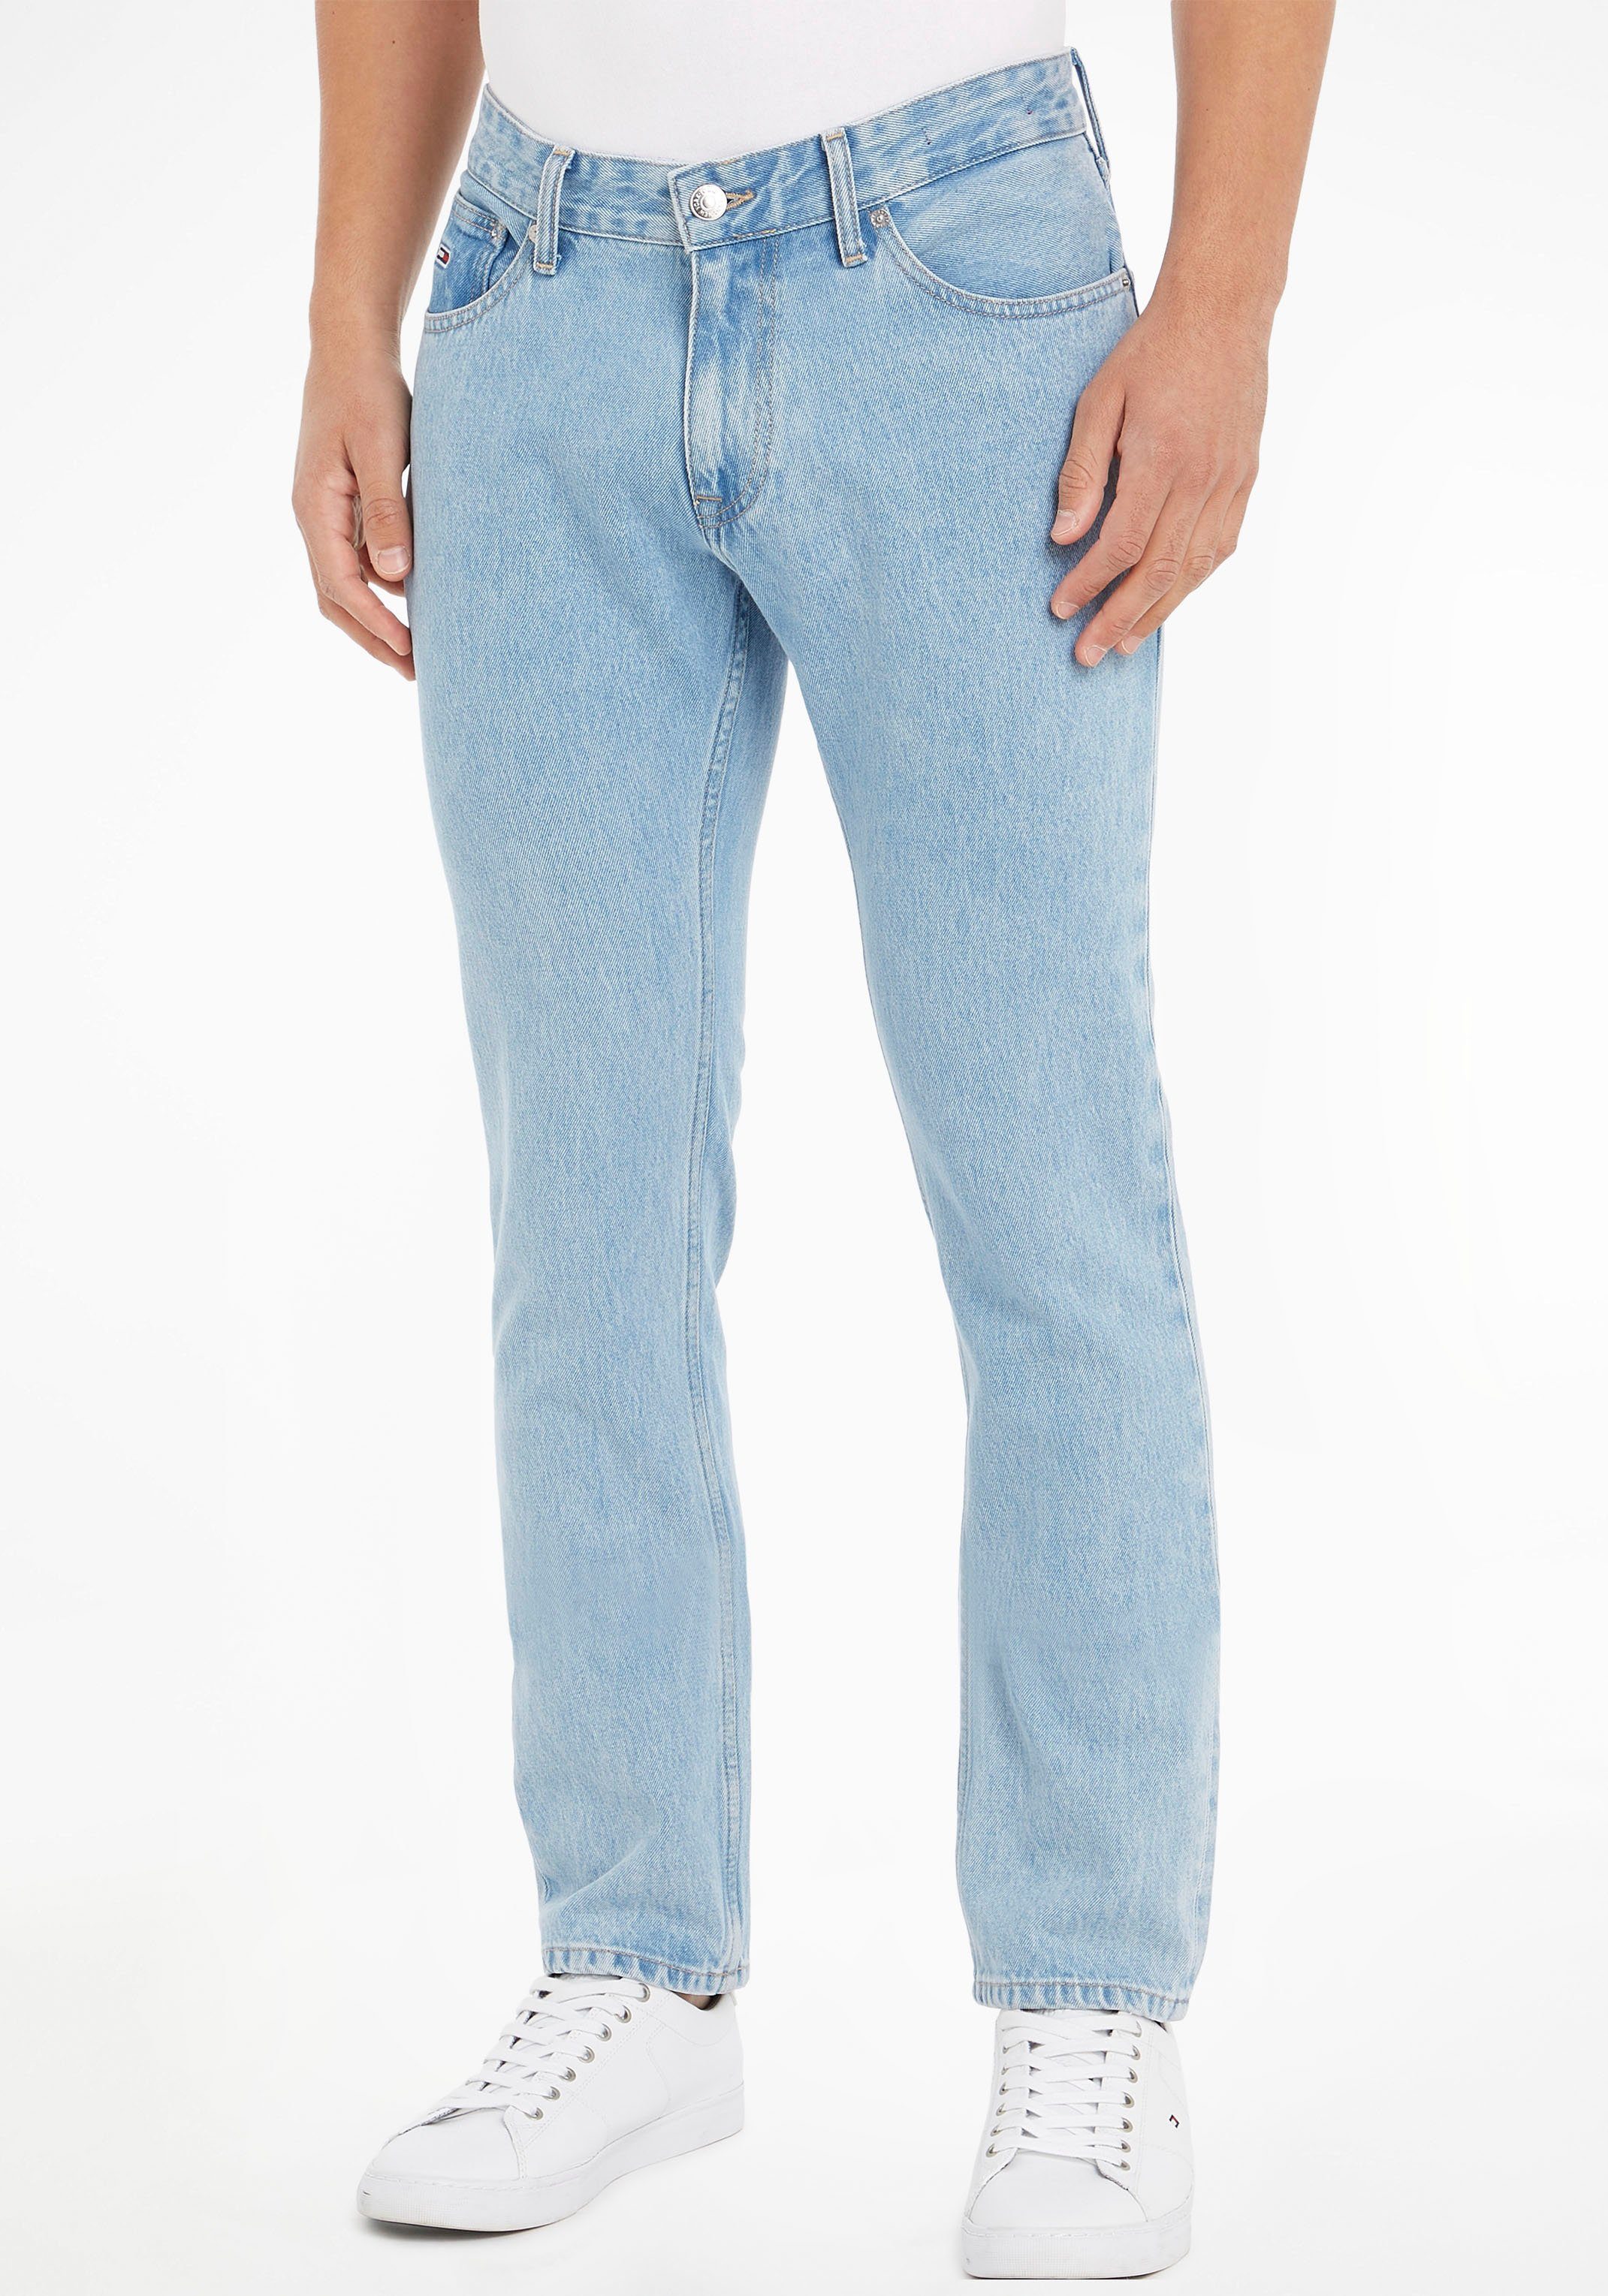 Slim-fit-Jeans SLIM 5-Pocket-Stil Jeans BG4015 Tommy SCANTON im